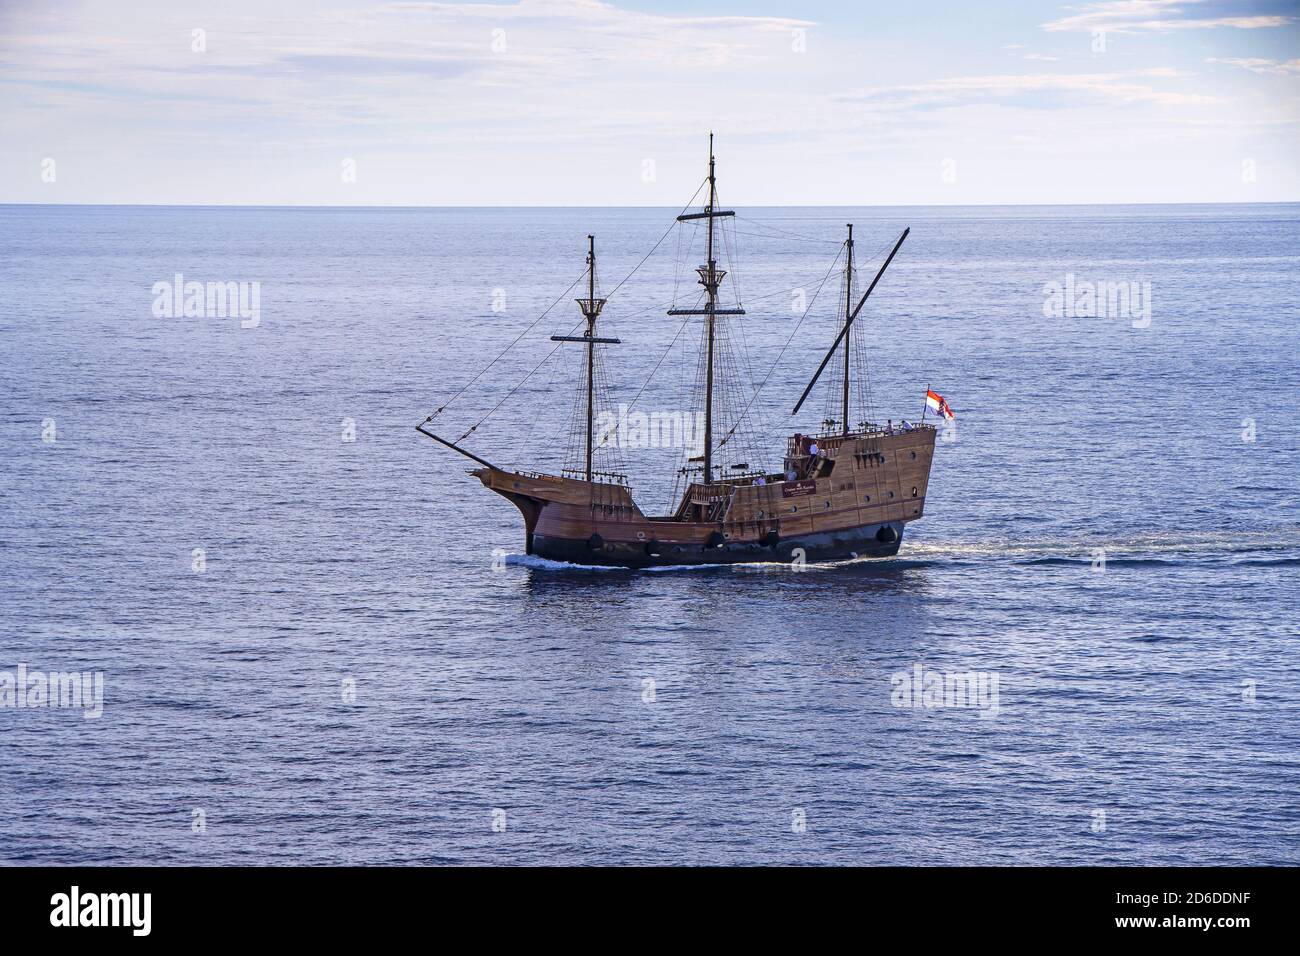 Dubrovnik, Croatie - 02. Septembre 2020: Karaka, réplique touristique du bateau médiéval en bois, naviguant jusqu'au vieux port de Dubrovnik, Croatie, Europe. Banque D'Images